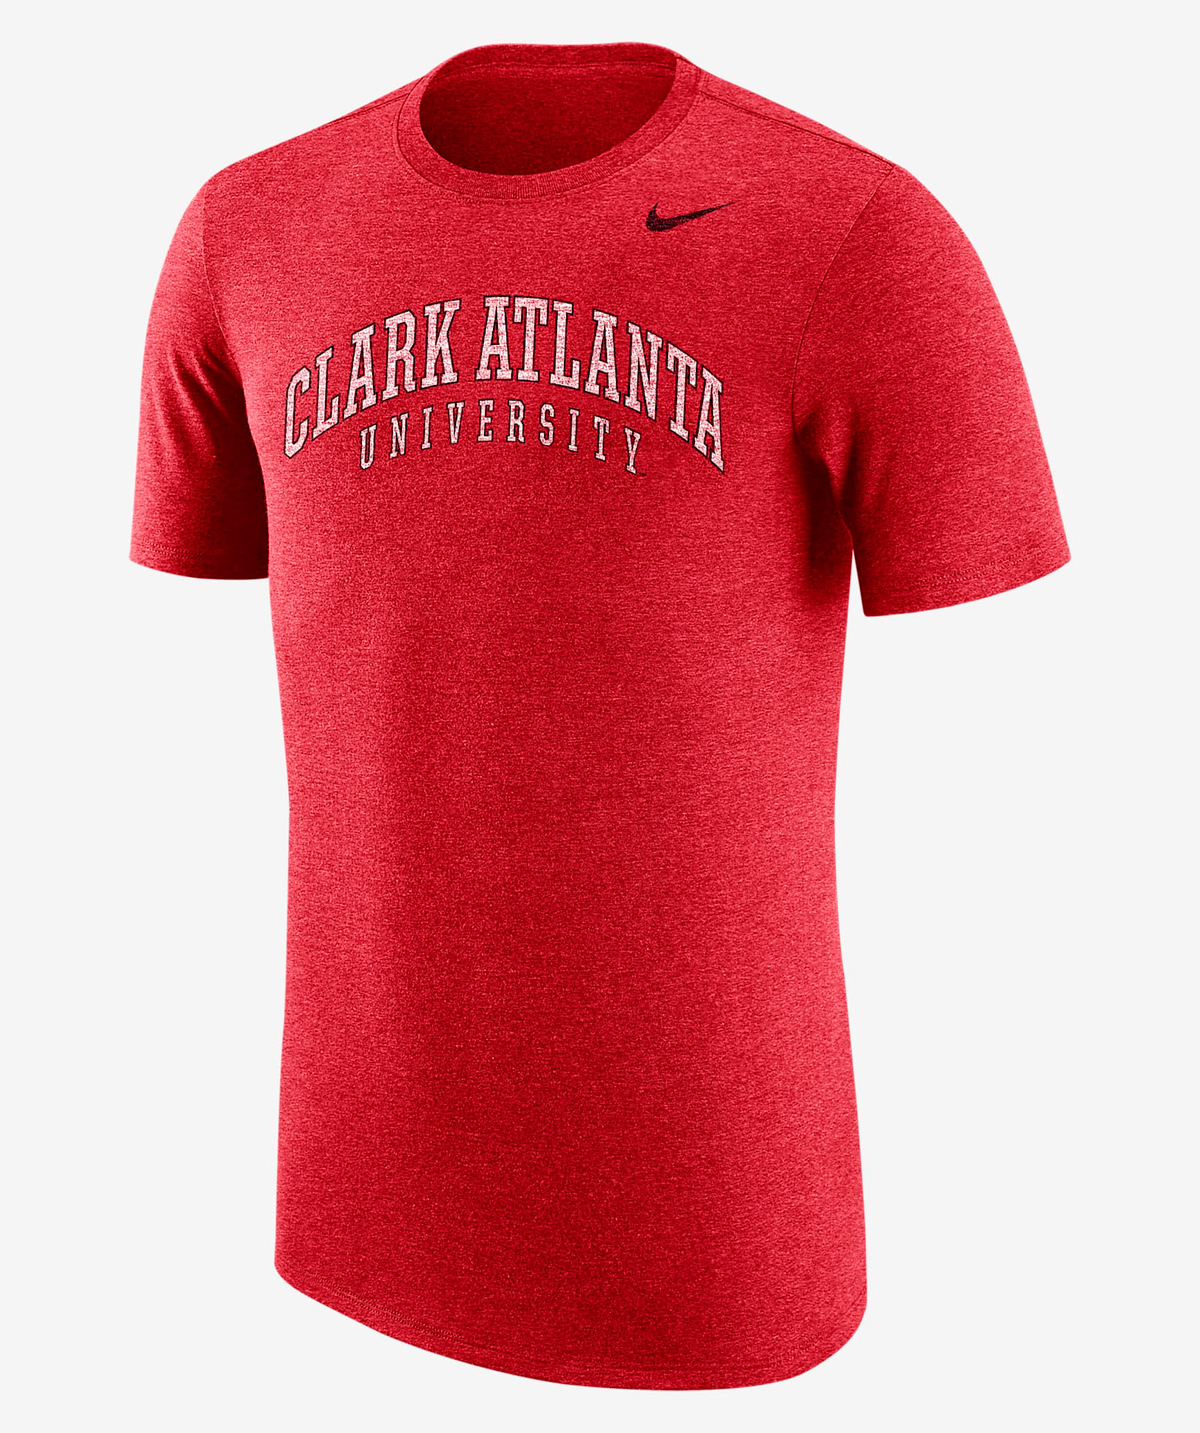 Nike-Dunk-Low-CAU-Clark-Atlanta-University-T-Shirt